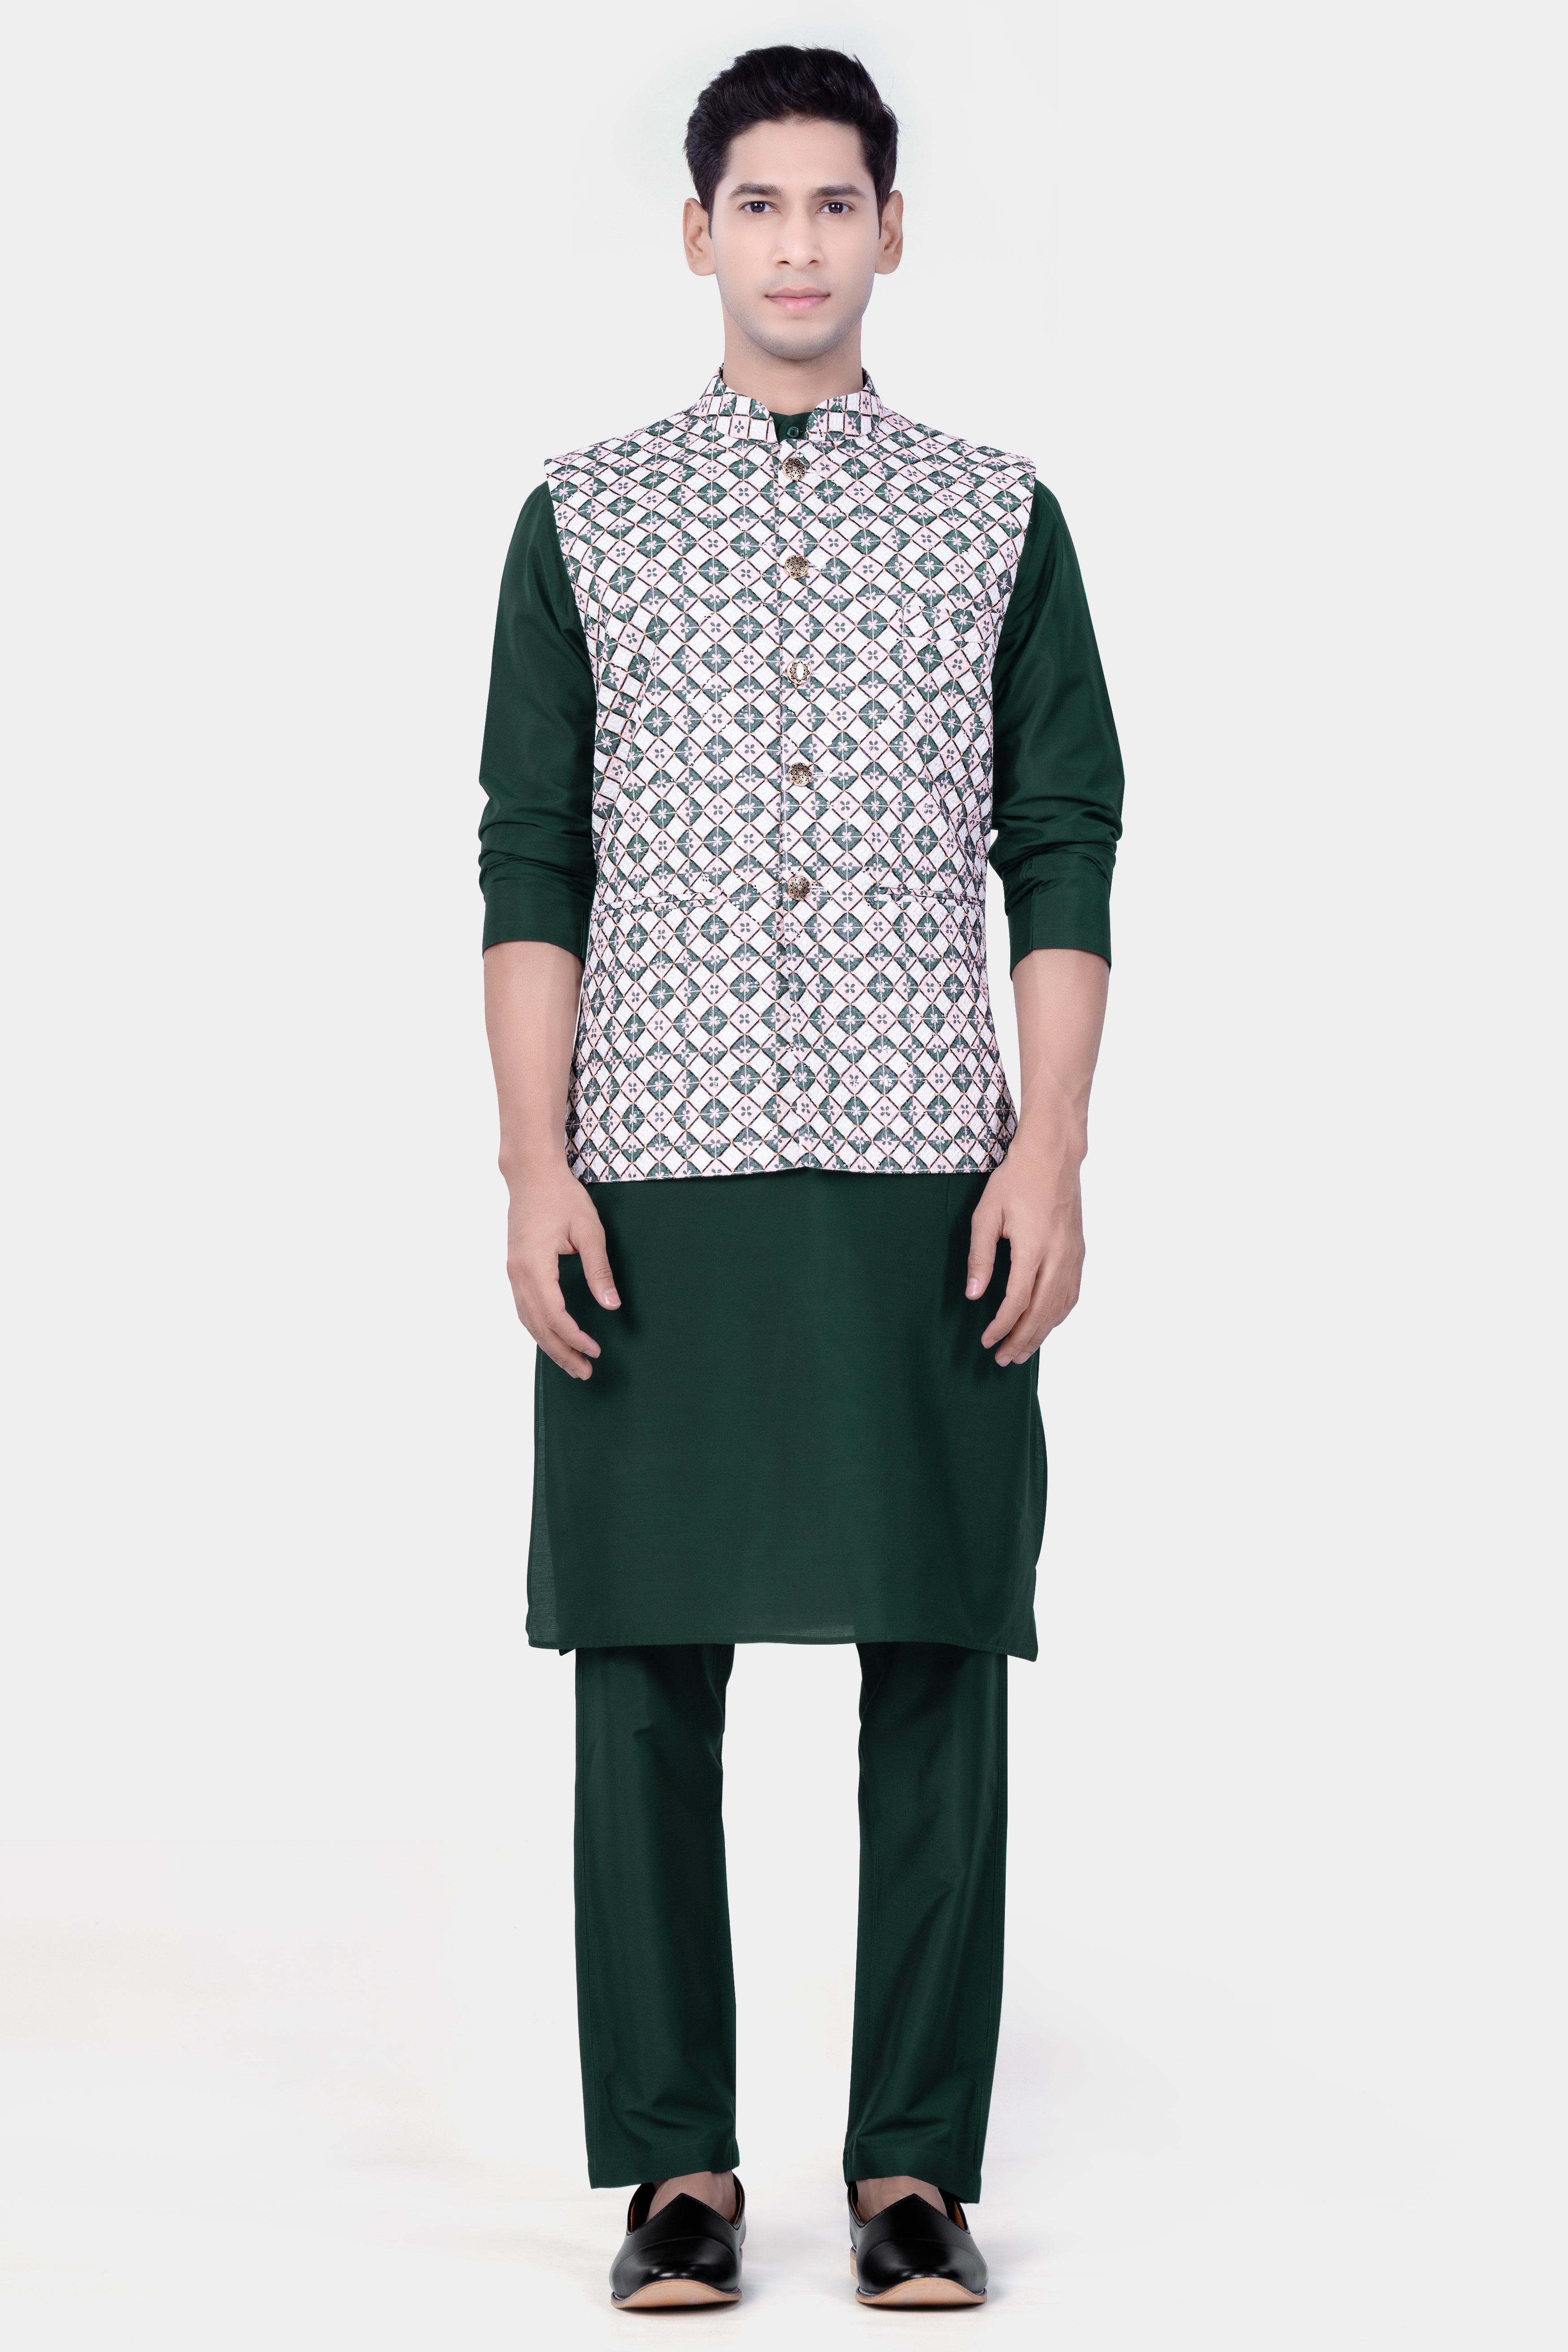 Bright White And Willam Green Trellis Designer Embroidered Nehru Jacket